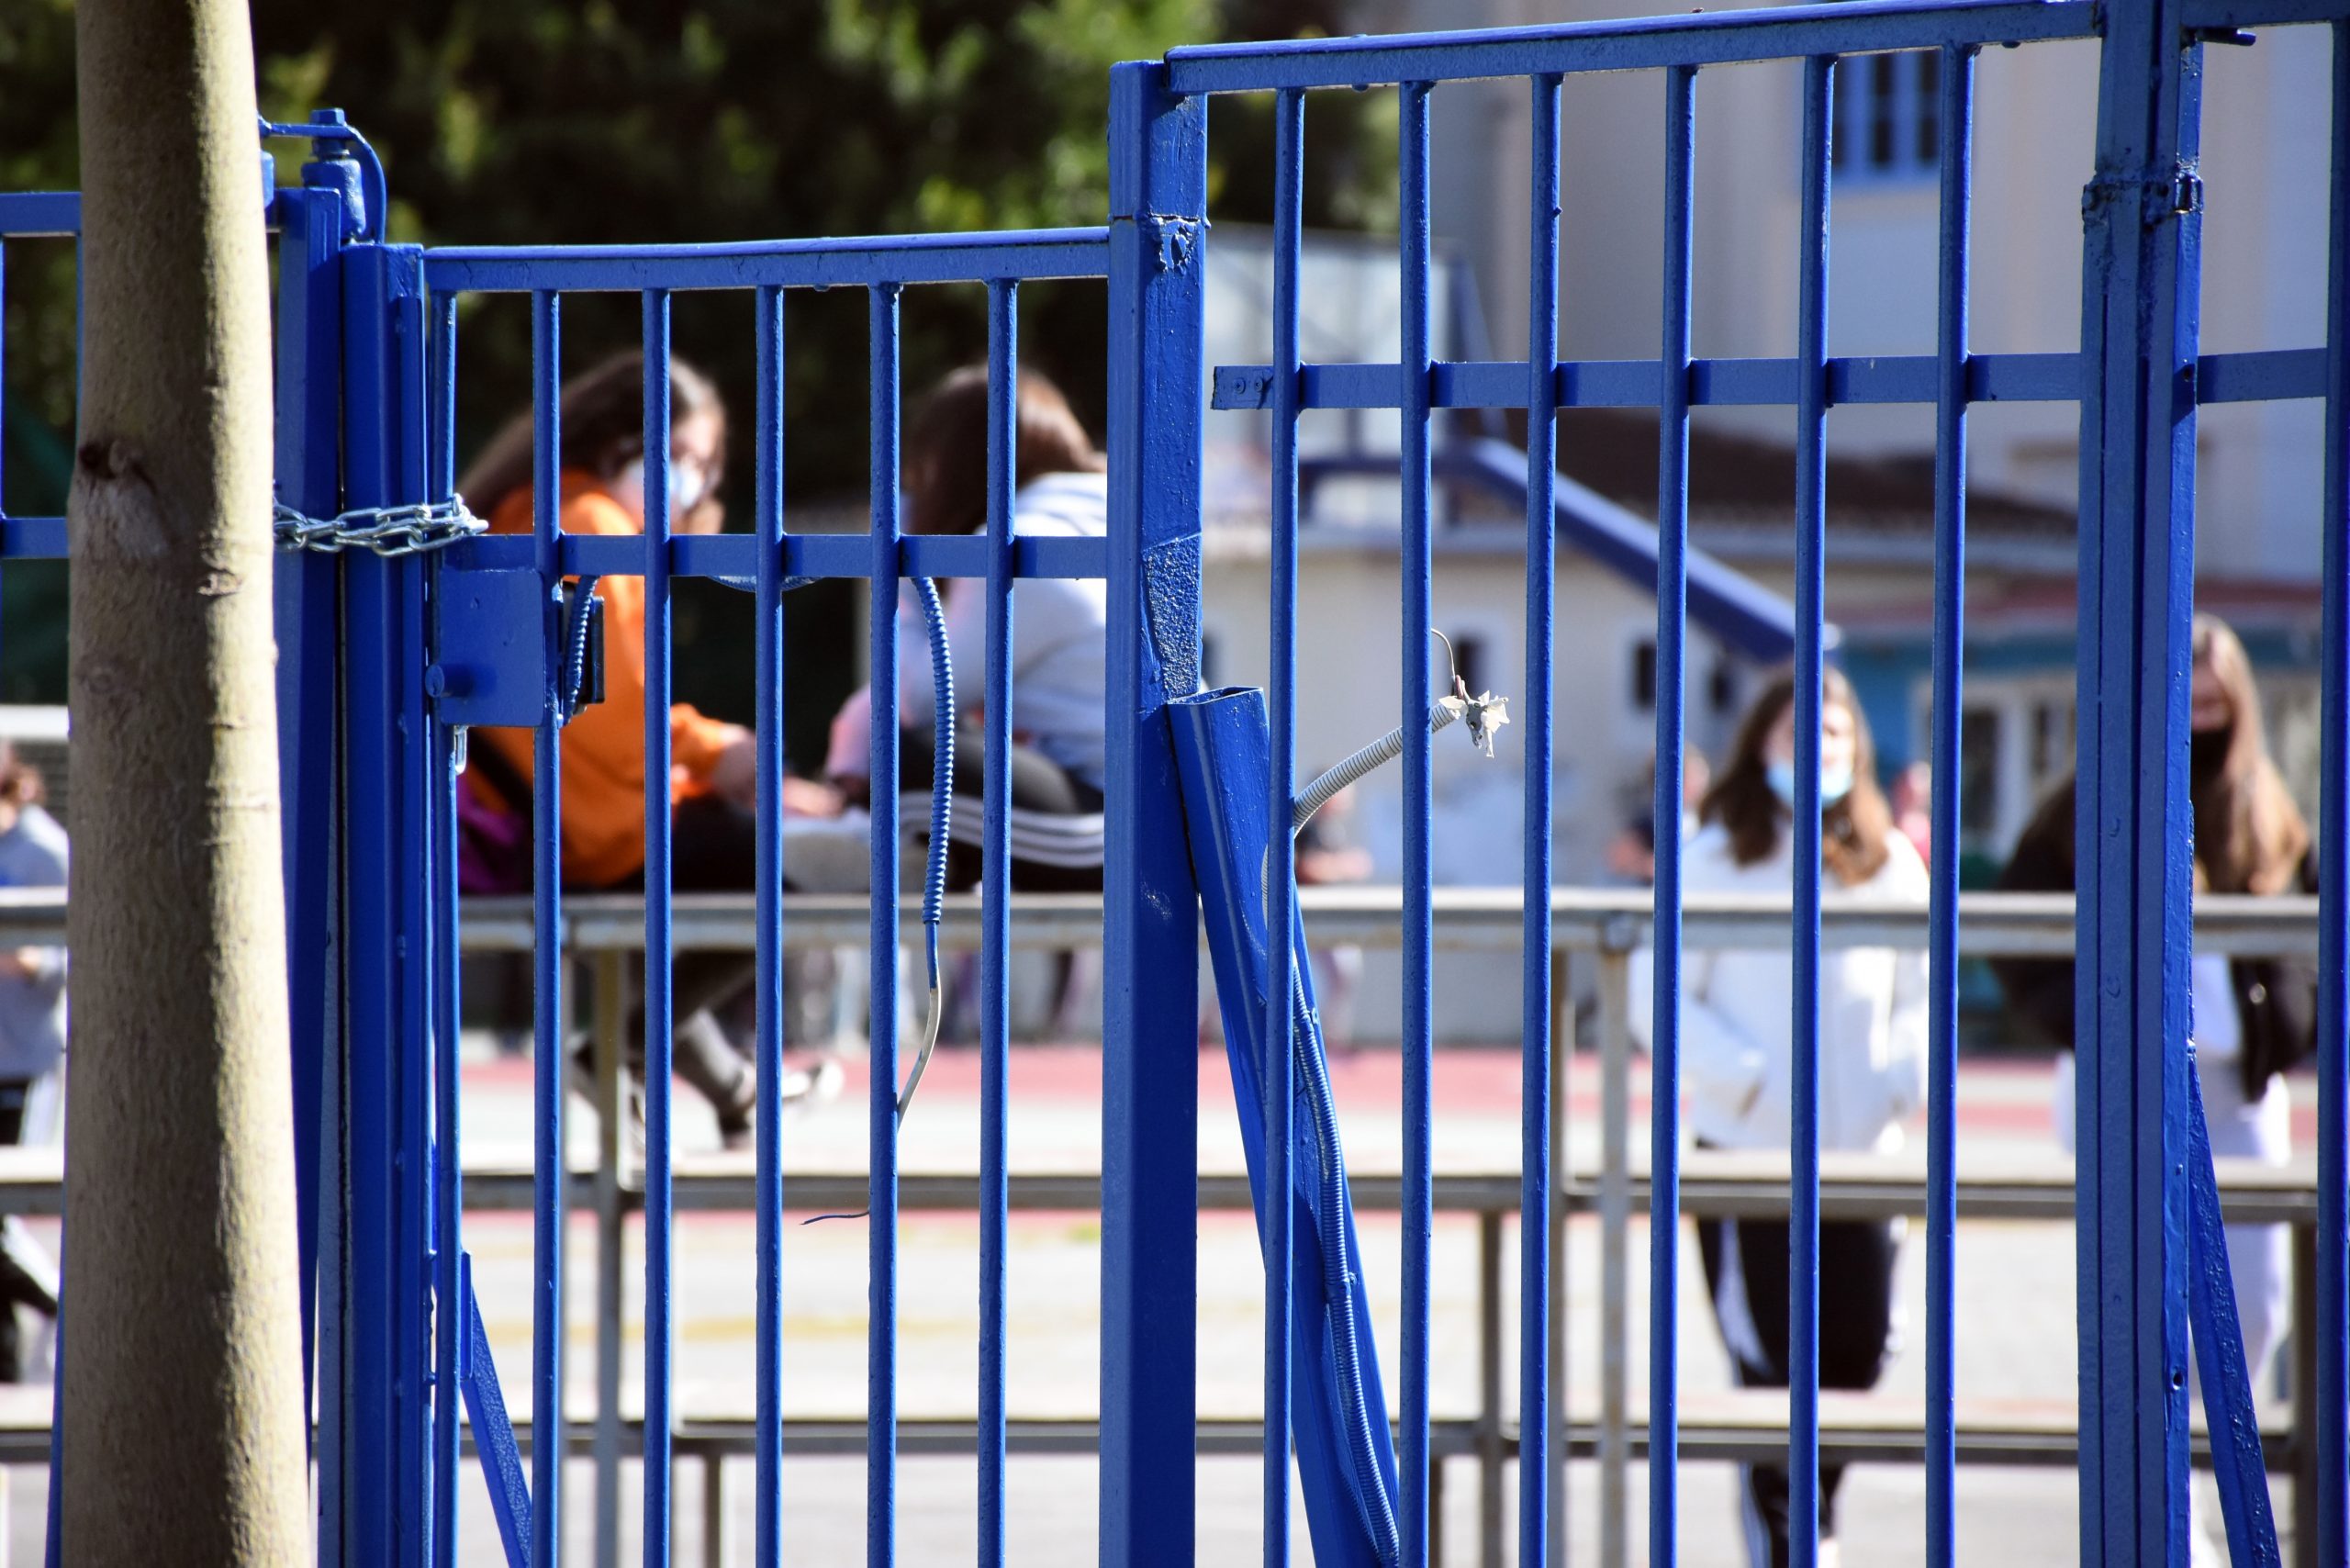 Κορονοϊός: Αμετακίνητοι οι αρνητές γονείς στο Ηράκλειο! Μόνο τρία παιδιά στο σχολείο